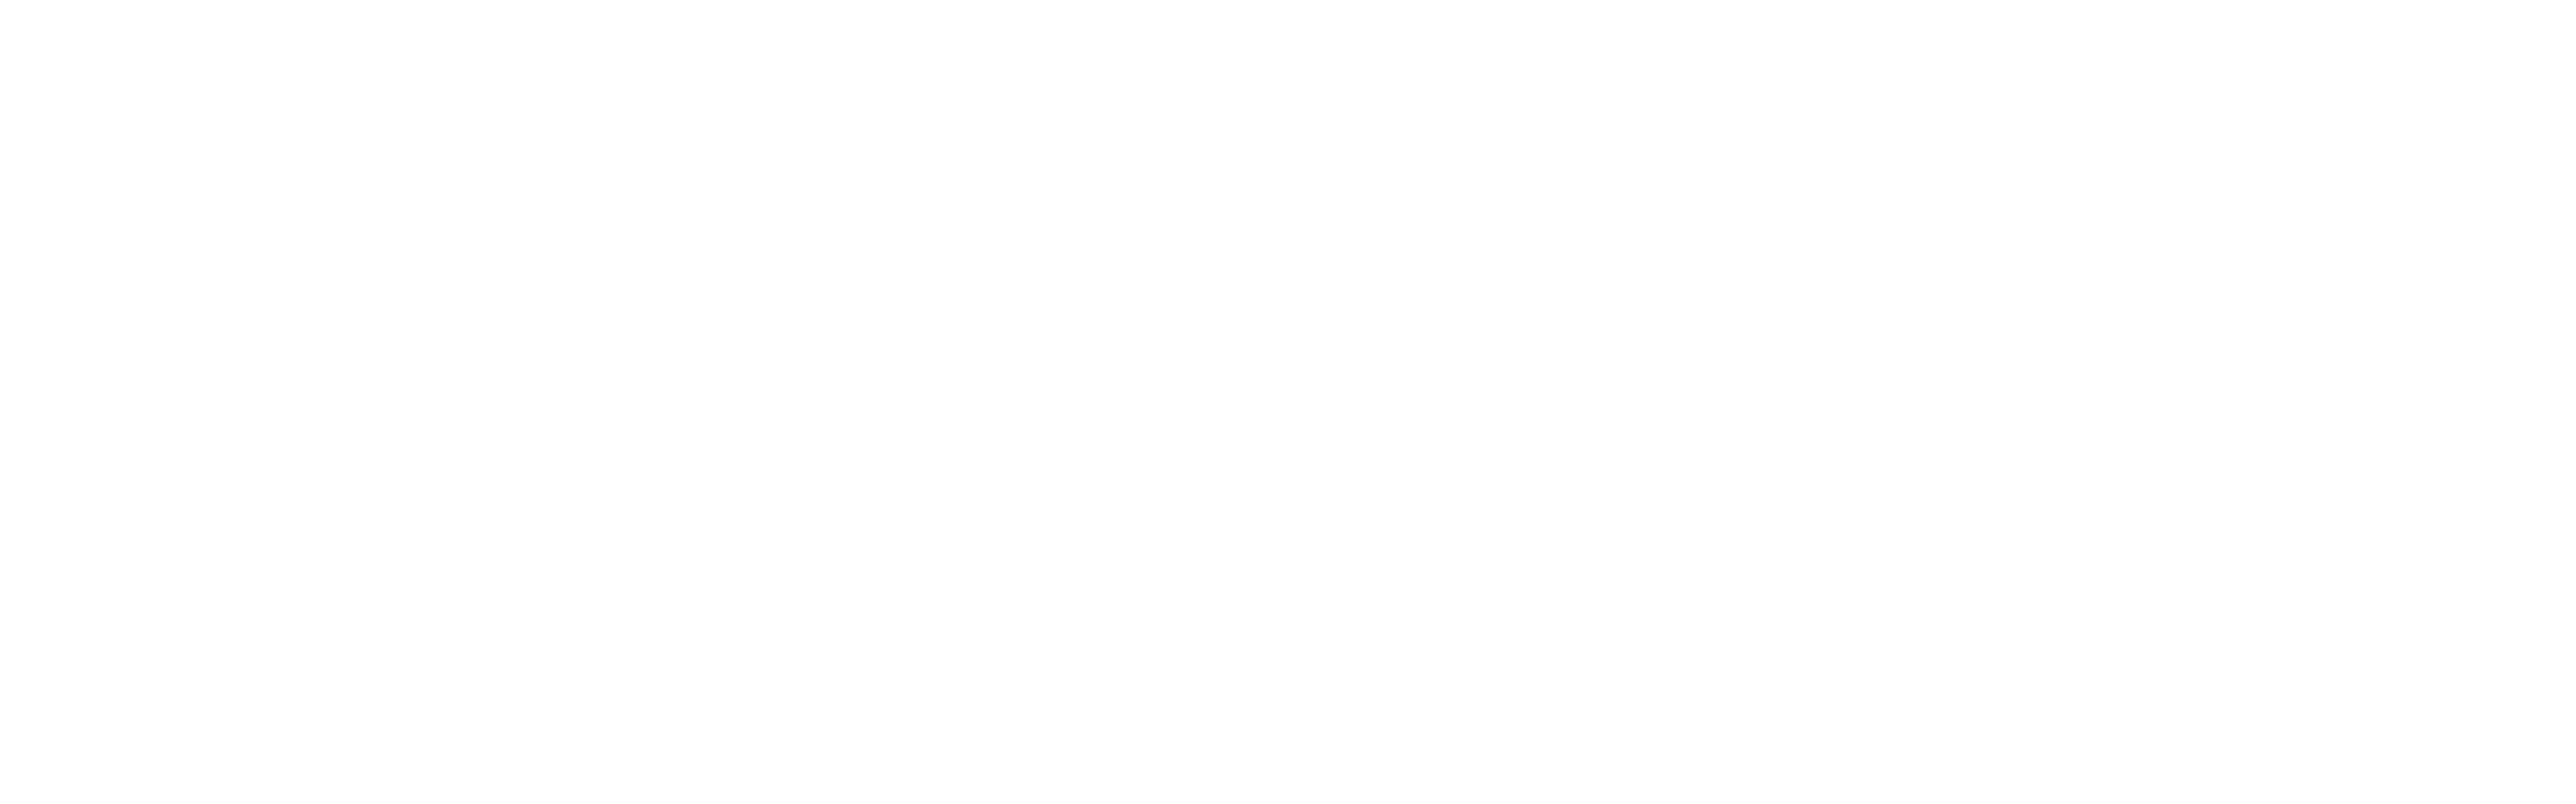 shine savings plan logo